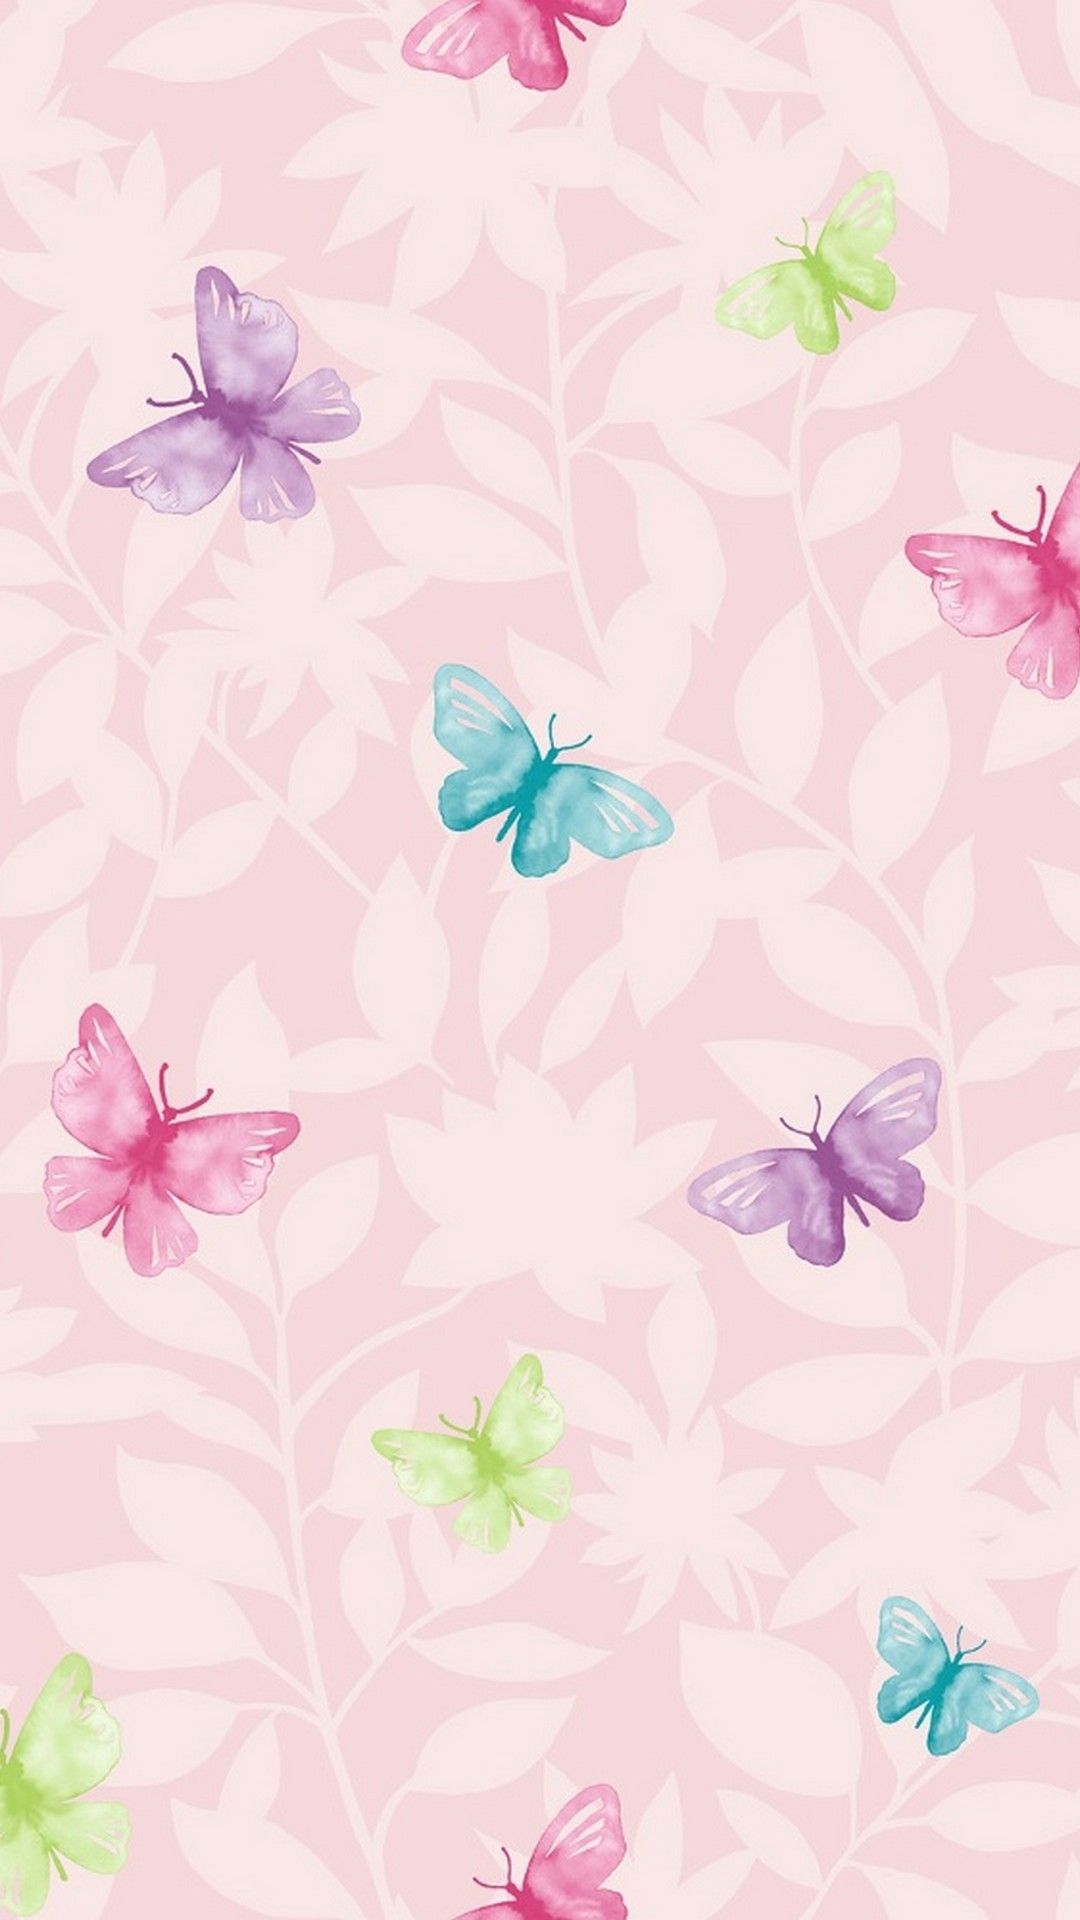 1080x1920 Wallpaper Pink Butterfly Mobile | Best HD Wallpapers | Butterfly wallpaper, Flower background wallpaper, Flower wallpaper